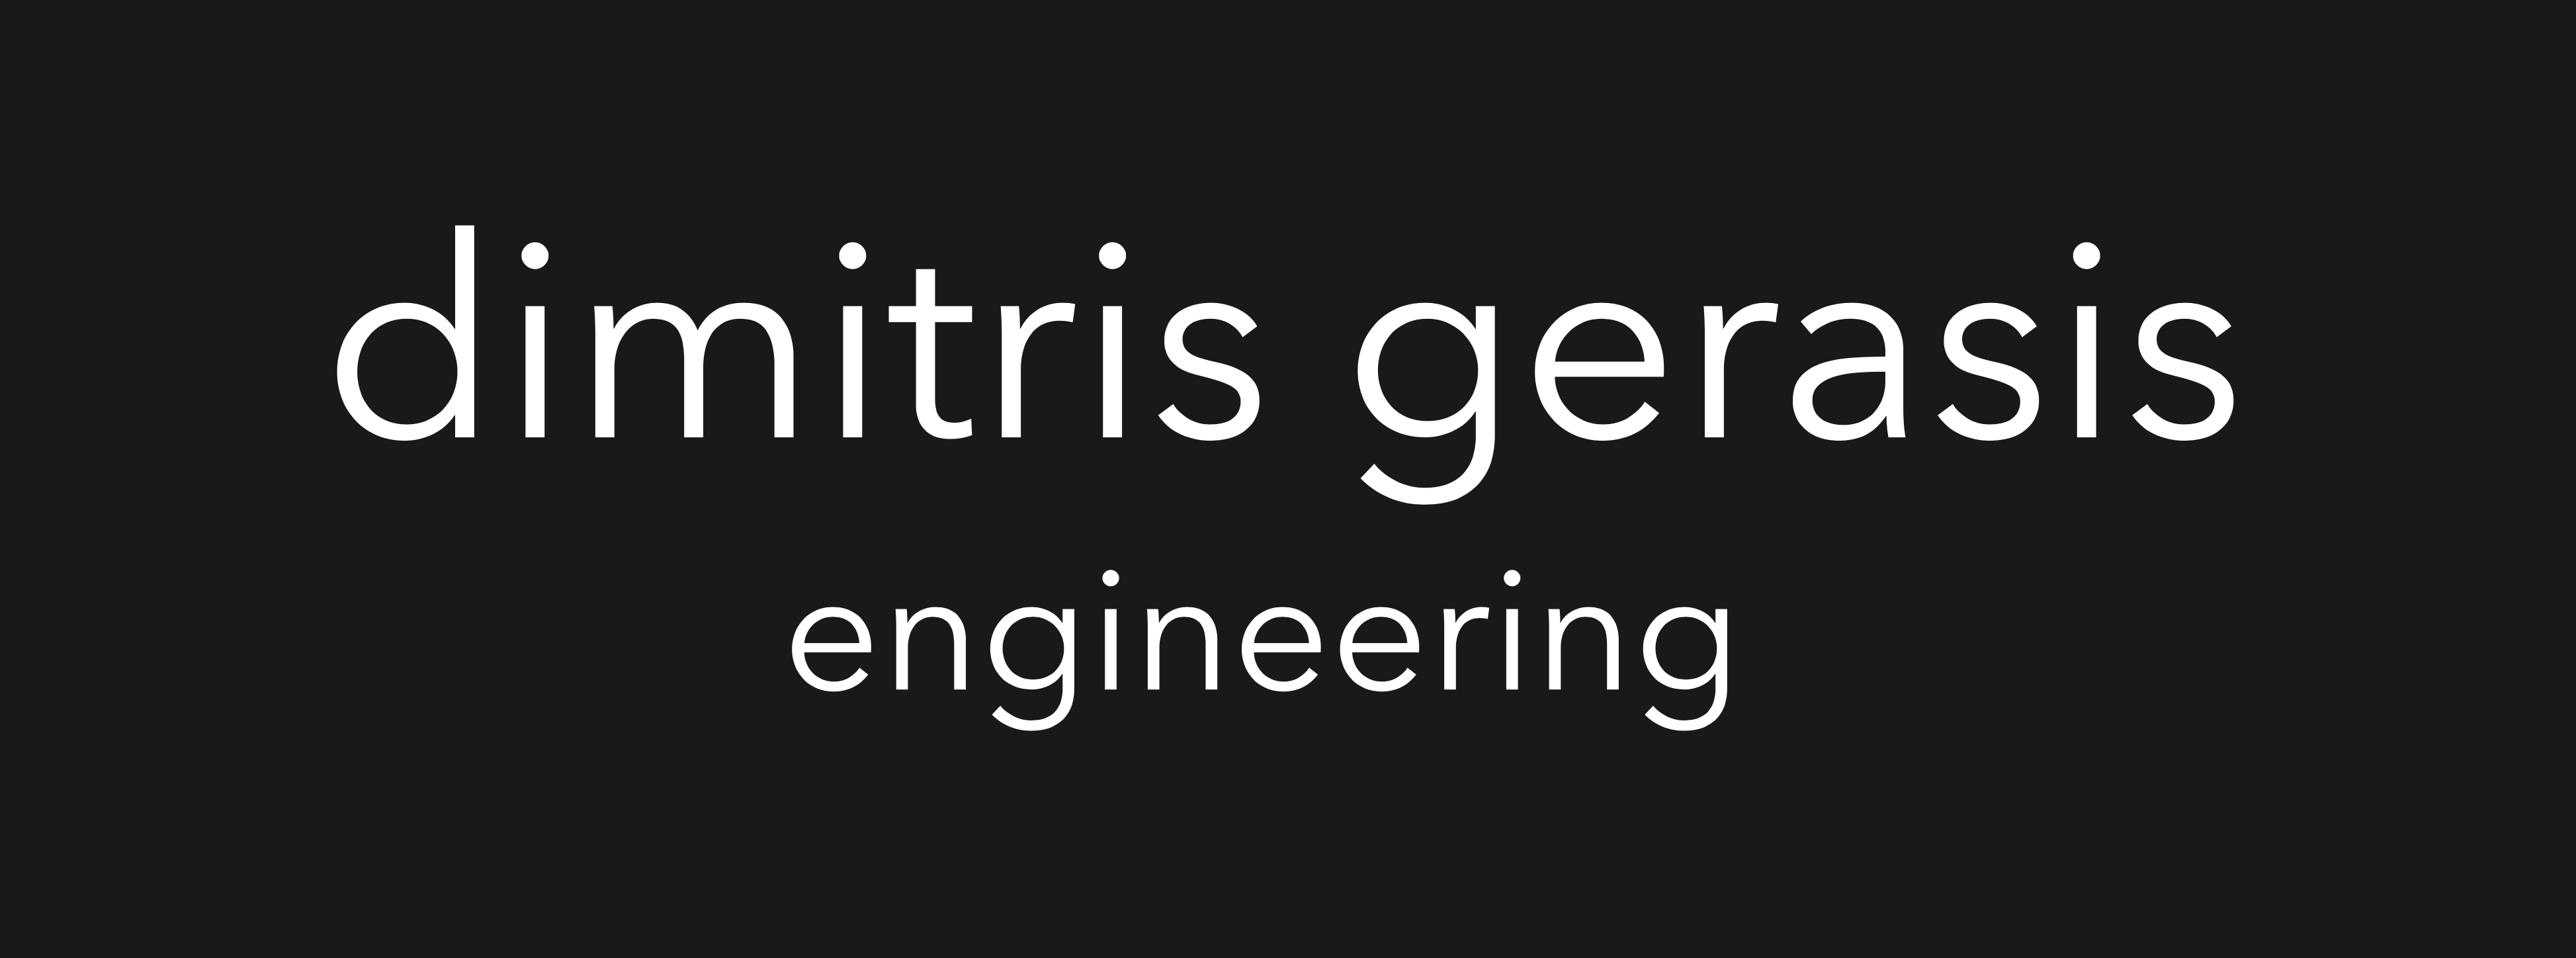 dimitris gerasis engineering logo